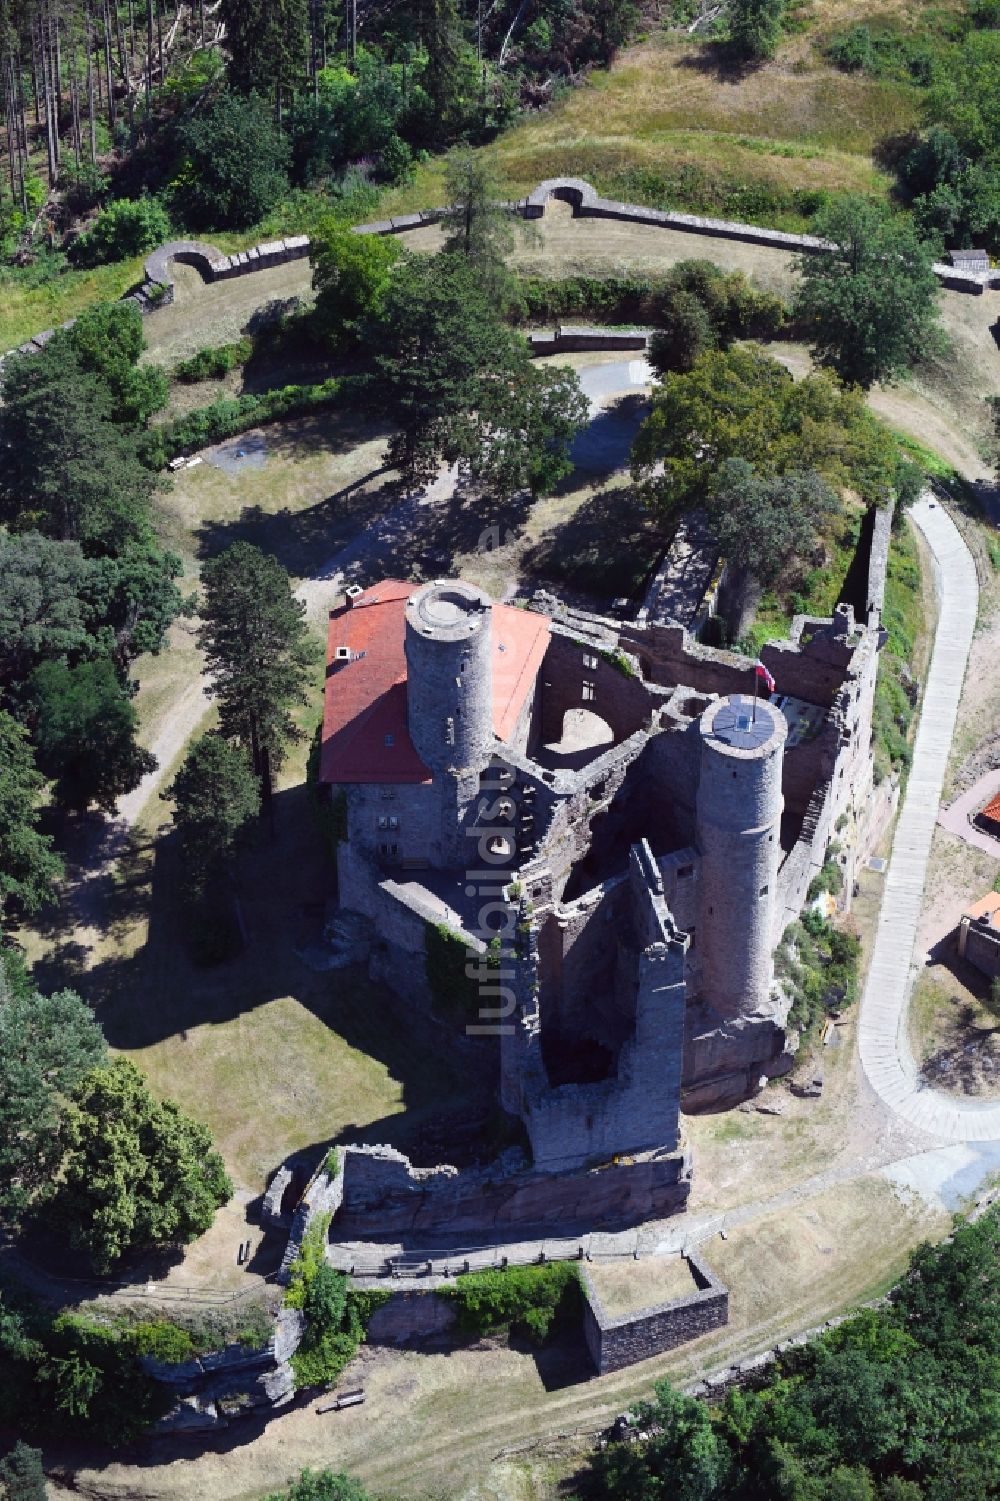 Bornhagen von oben - Burg Hanstein in Bornhagen im Bundesland Thüringen, Deutschland